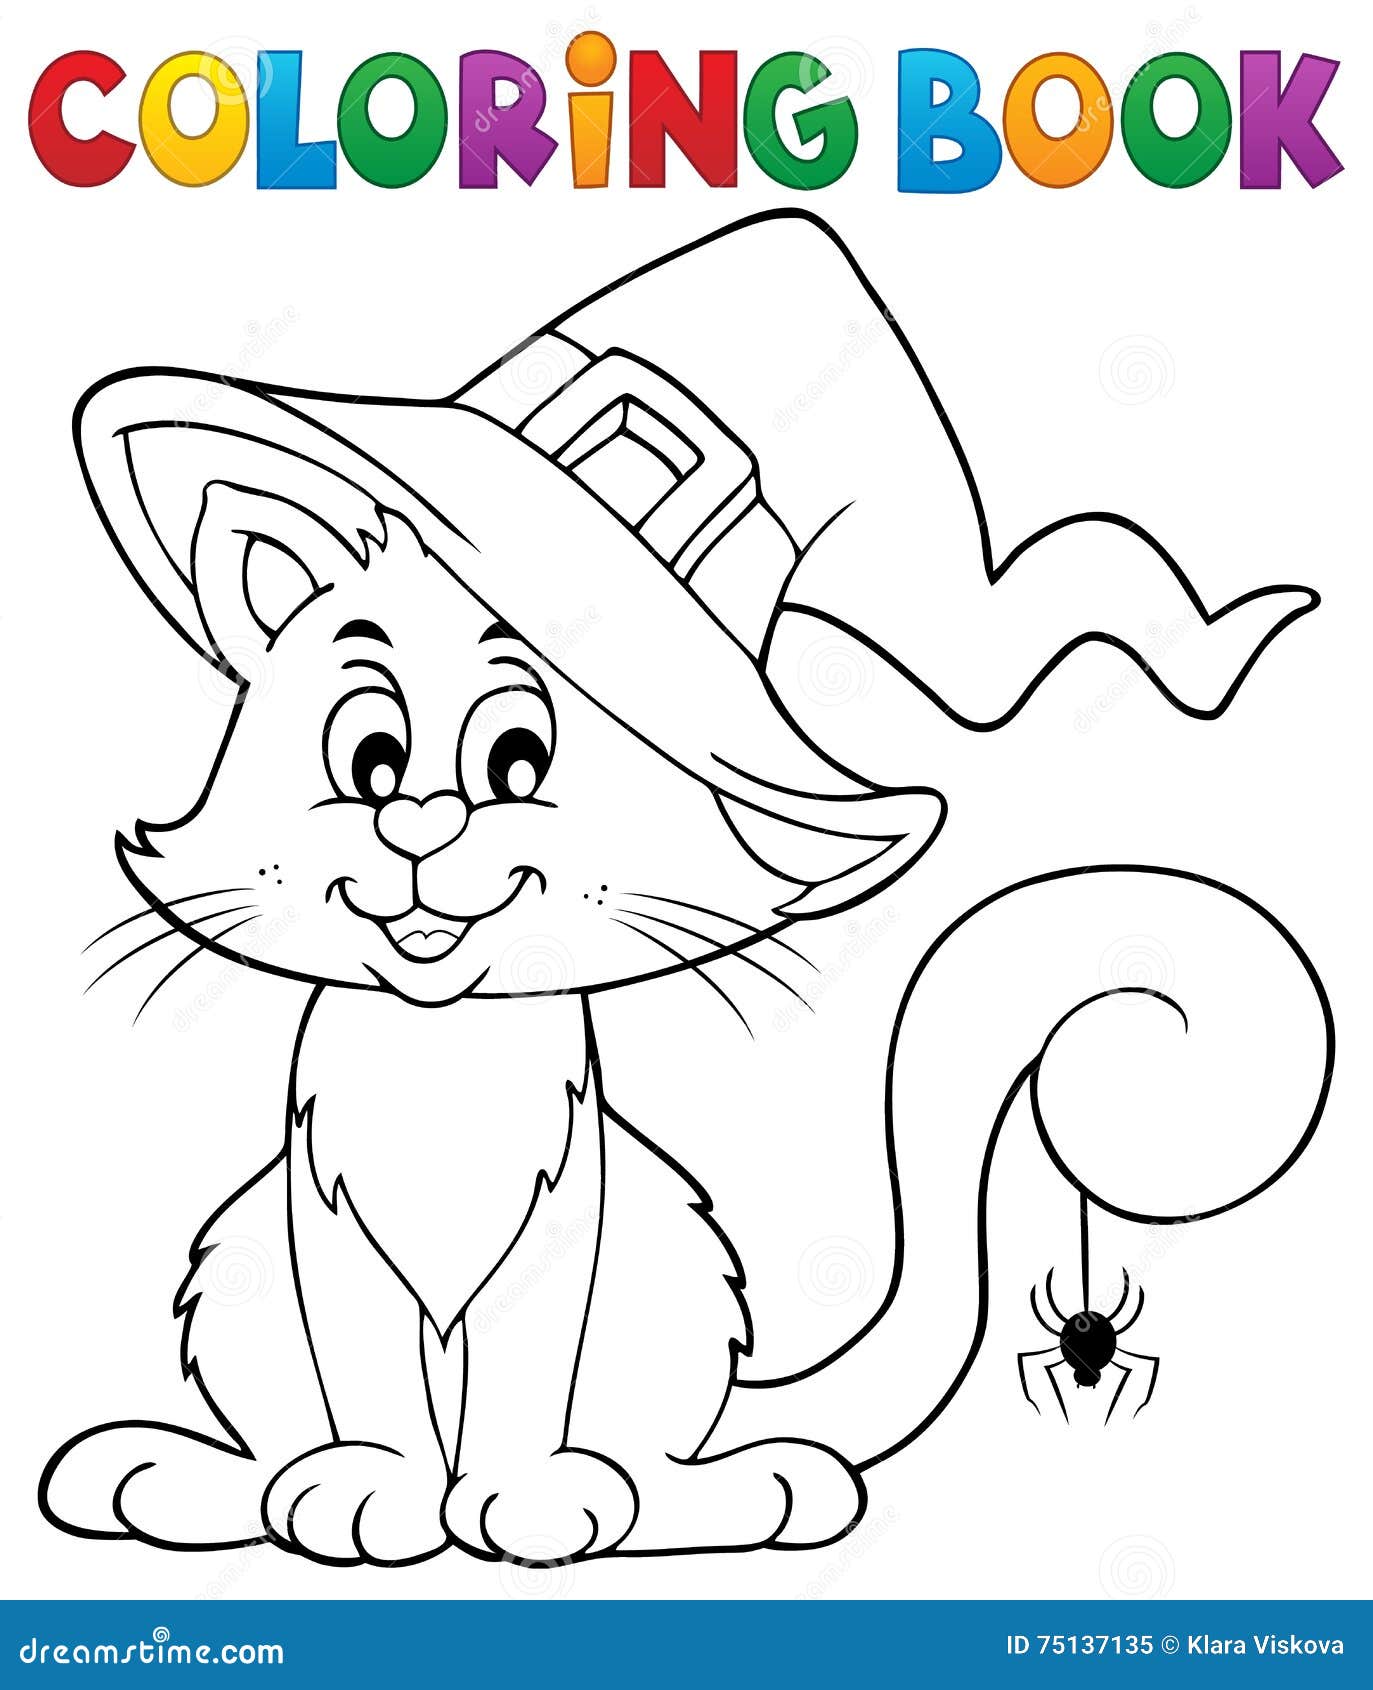 FREE! - Gatos de Halloween para Colorir – Dia das Bruxas